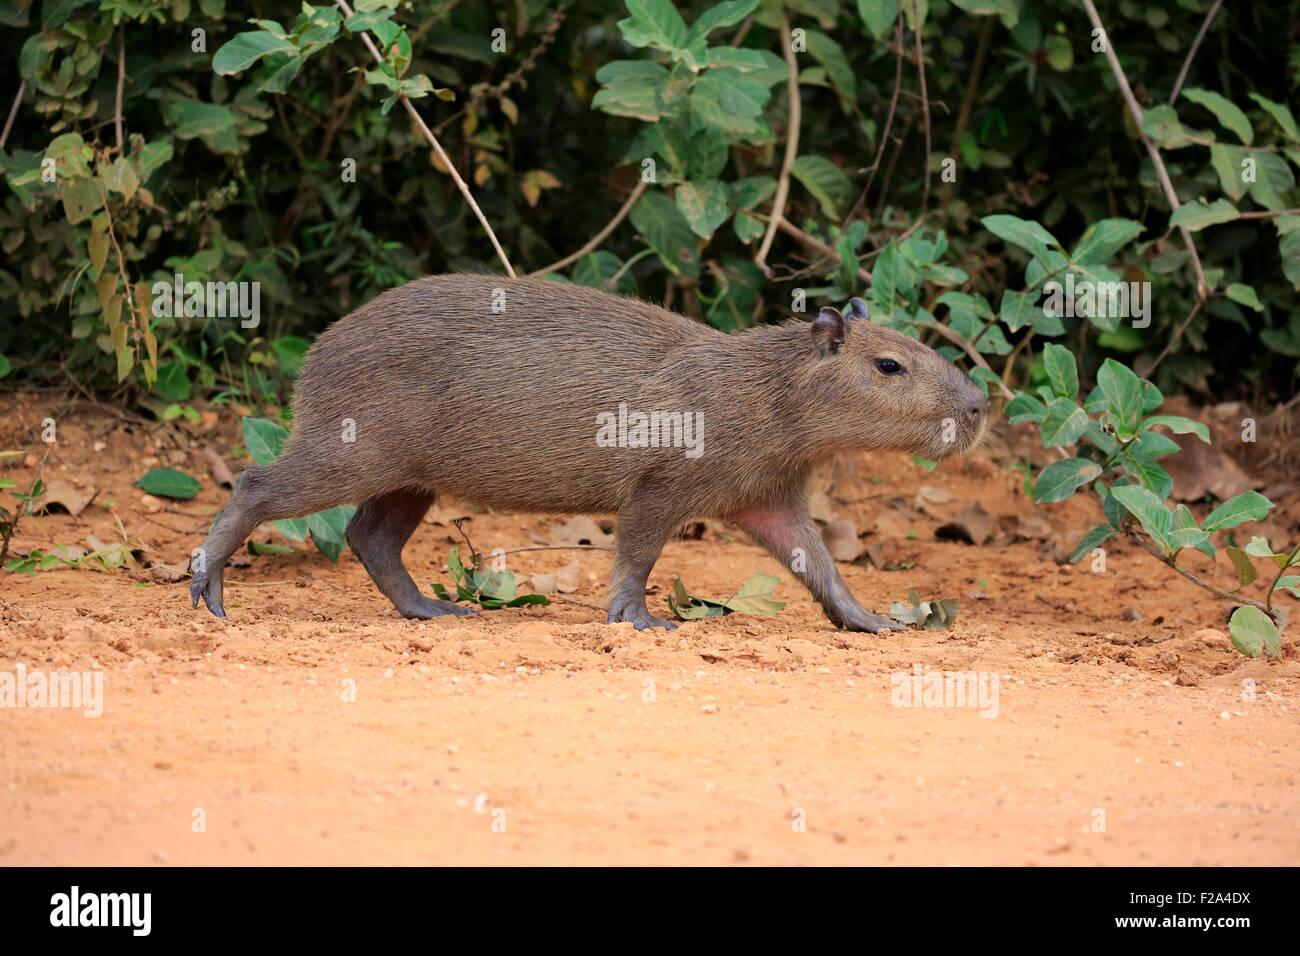 Capybara (Hydrochoerus hydrochaeris), young animal, walking, on land, Pantanal, Mato Grosso, Brazil Stock Photo